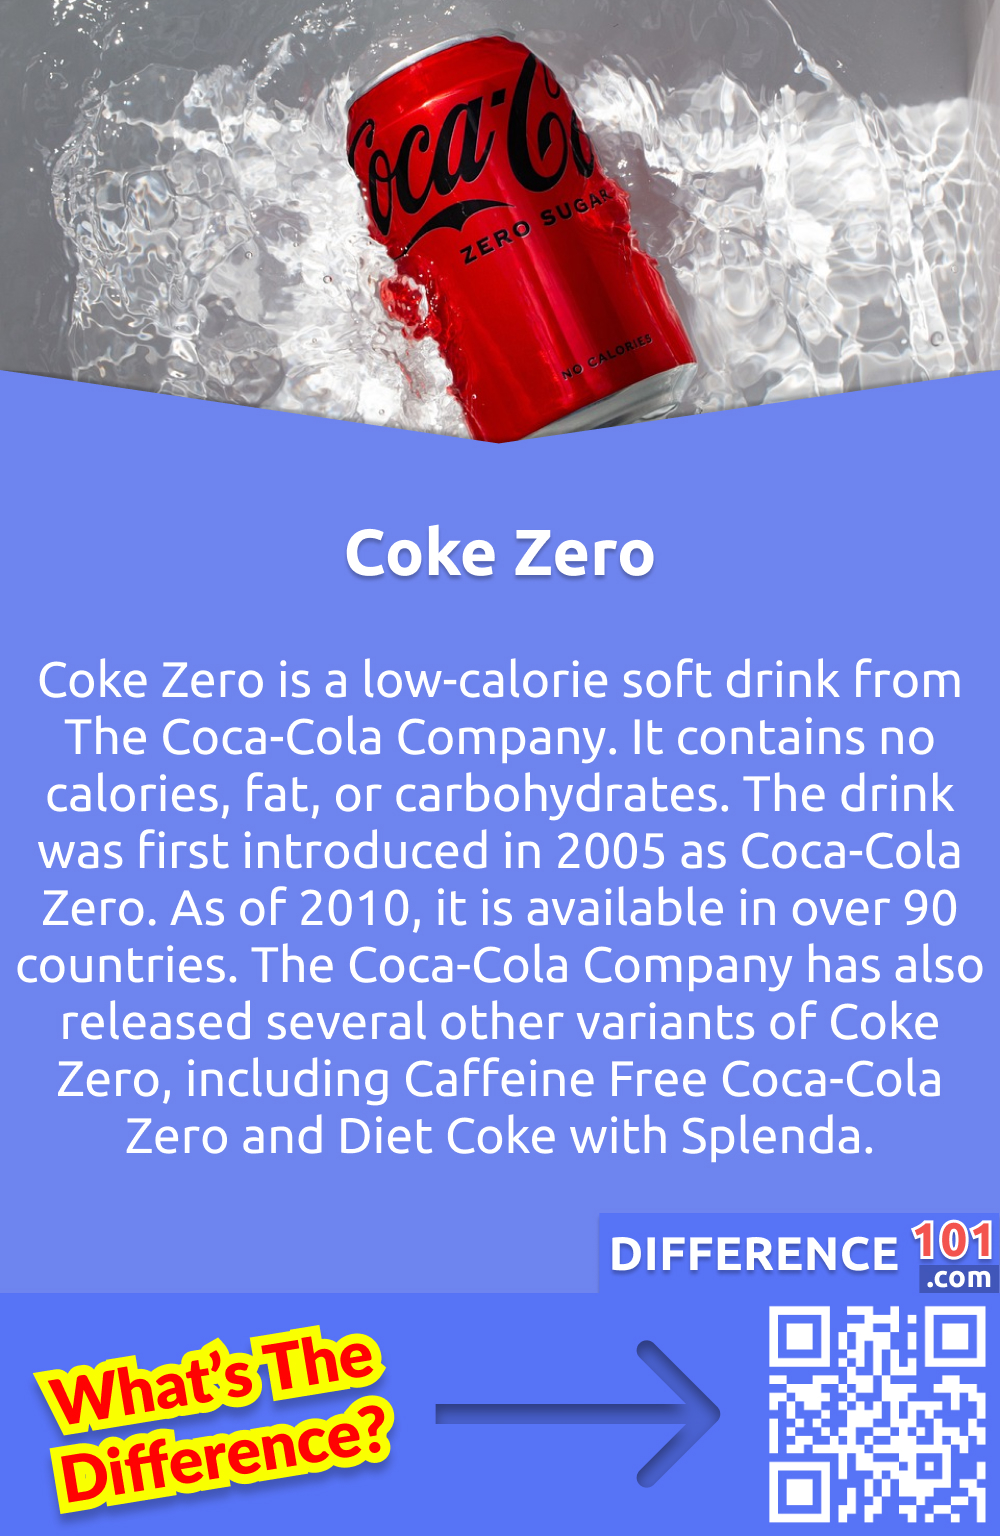 Qu'est-ce que le Coke Zéro ? Le Coke Zéro est une boisson gazeuse hypocalorique de The Coca-Cola Company. Elle ne contient ni calories, ni graisses, ni glucides. La boisson a été lancée en 2005 sous le nom de Coca-Cola Zéro. En 2010, elle est disponible dans plus de 90 pays. The Coca-Cola Company a également lancé plusieurs autres variantes du Coca Zéro, notamment le Coca-Cola Zéro sans caféine et le Coca Diet avec Splenda.